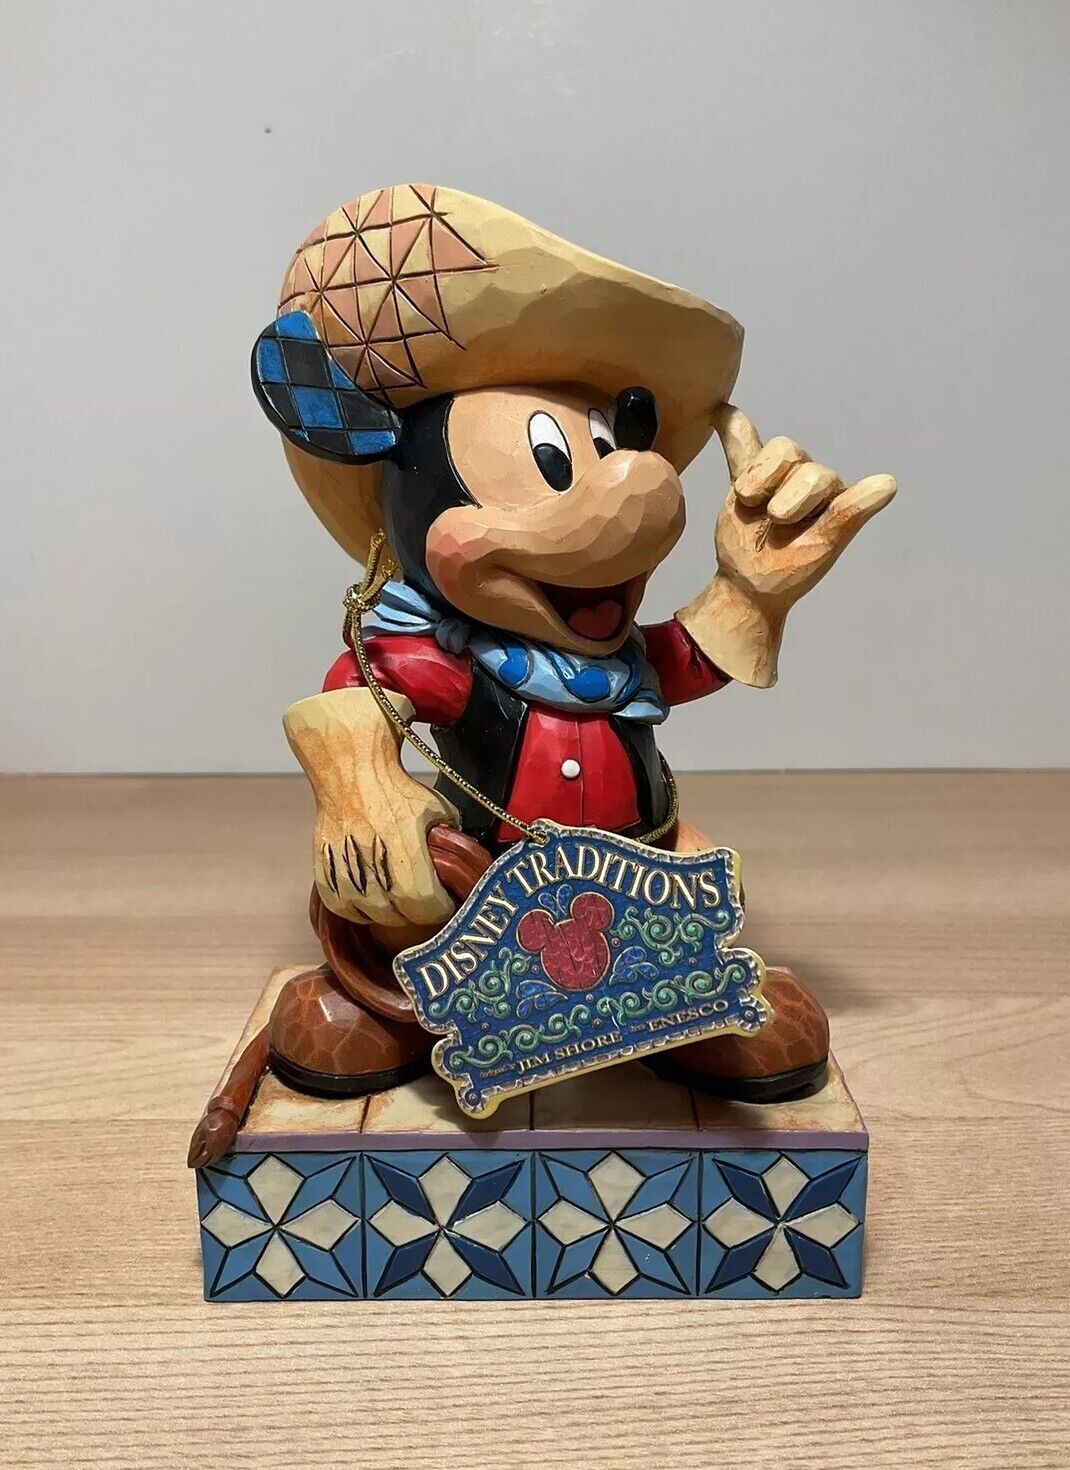 Disney Traditions Jim Shore Cowboy Mickey Figurine 4033286 Enesco Collectible